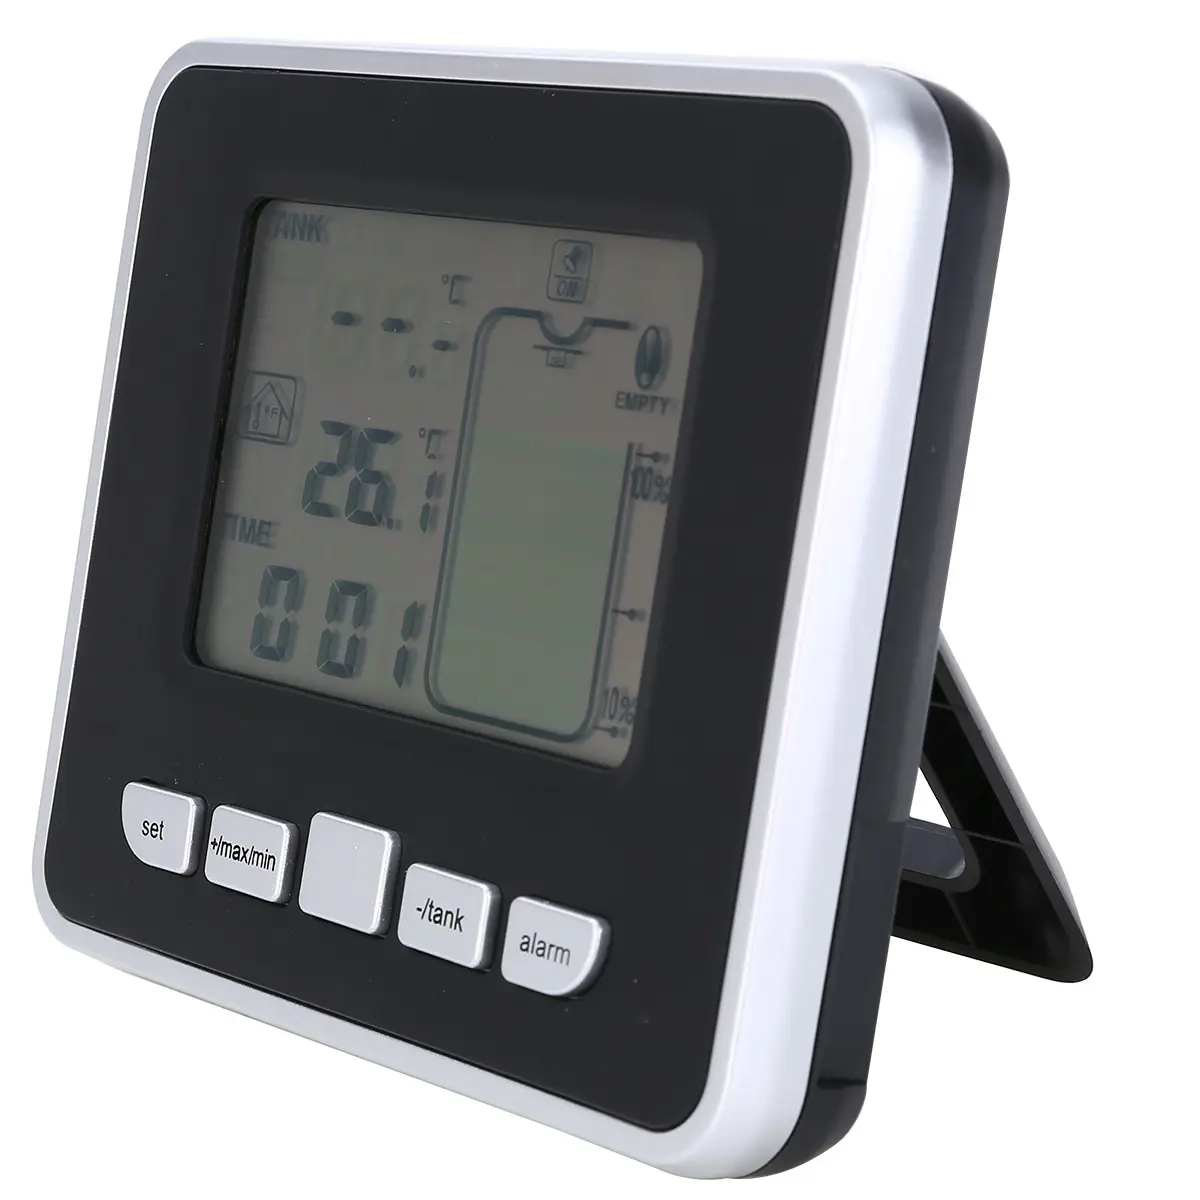 Ultrasonik su deposu seviye ölçer sıcaklık sensörü düşük pil sıvı derinlik göstergesi zaman alarmı verici ölçüm araçları